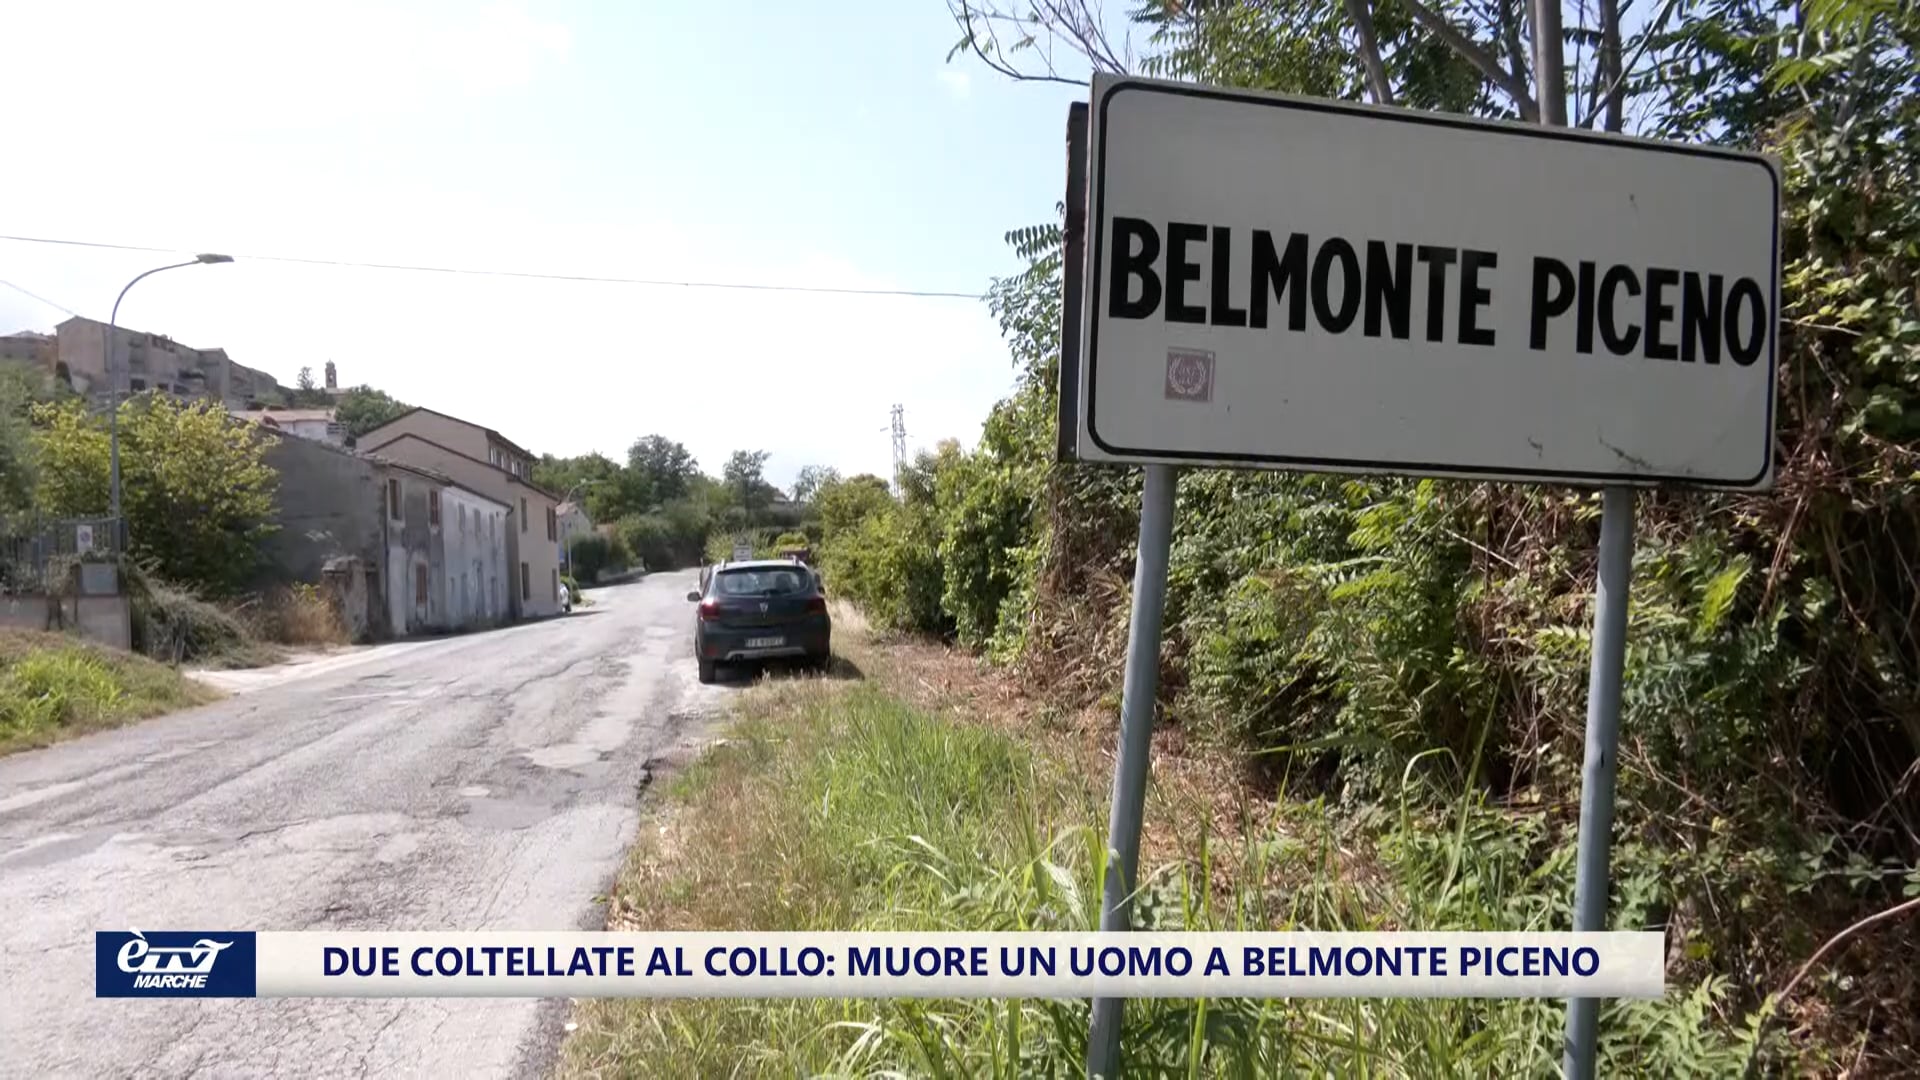 Due coltellate al collo: muore un uomo a Belmonte Piceno - VIDEO